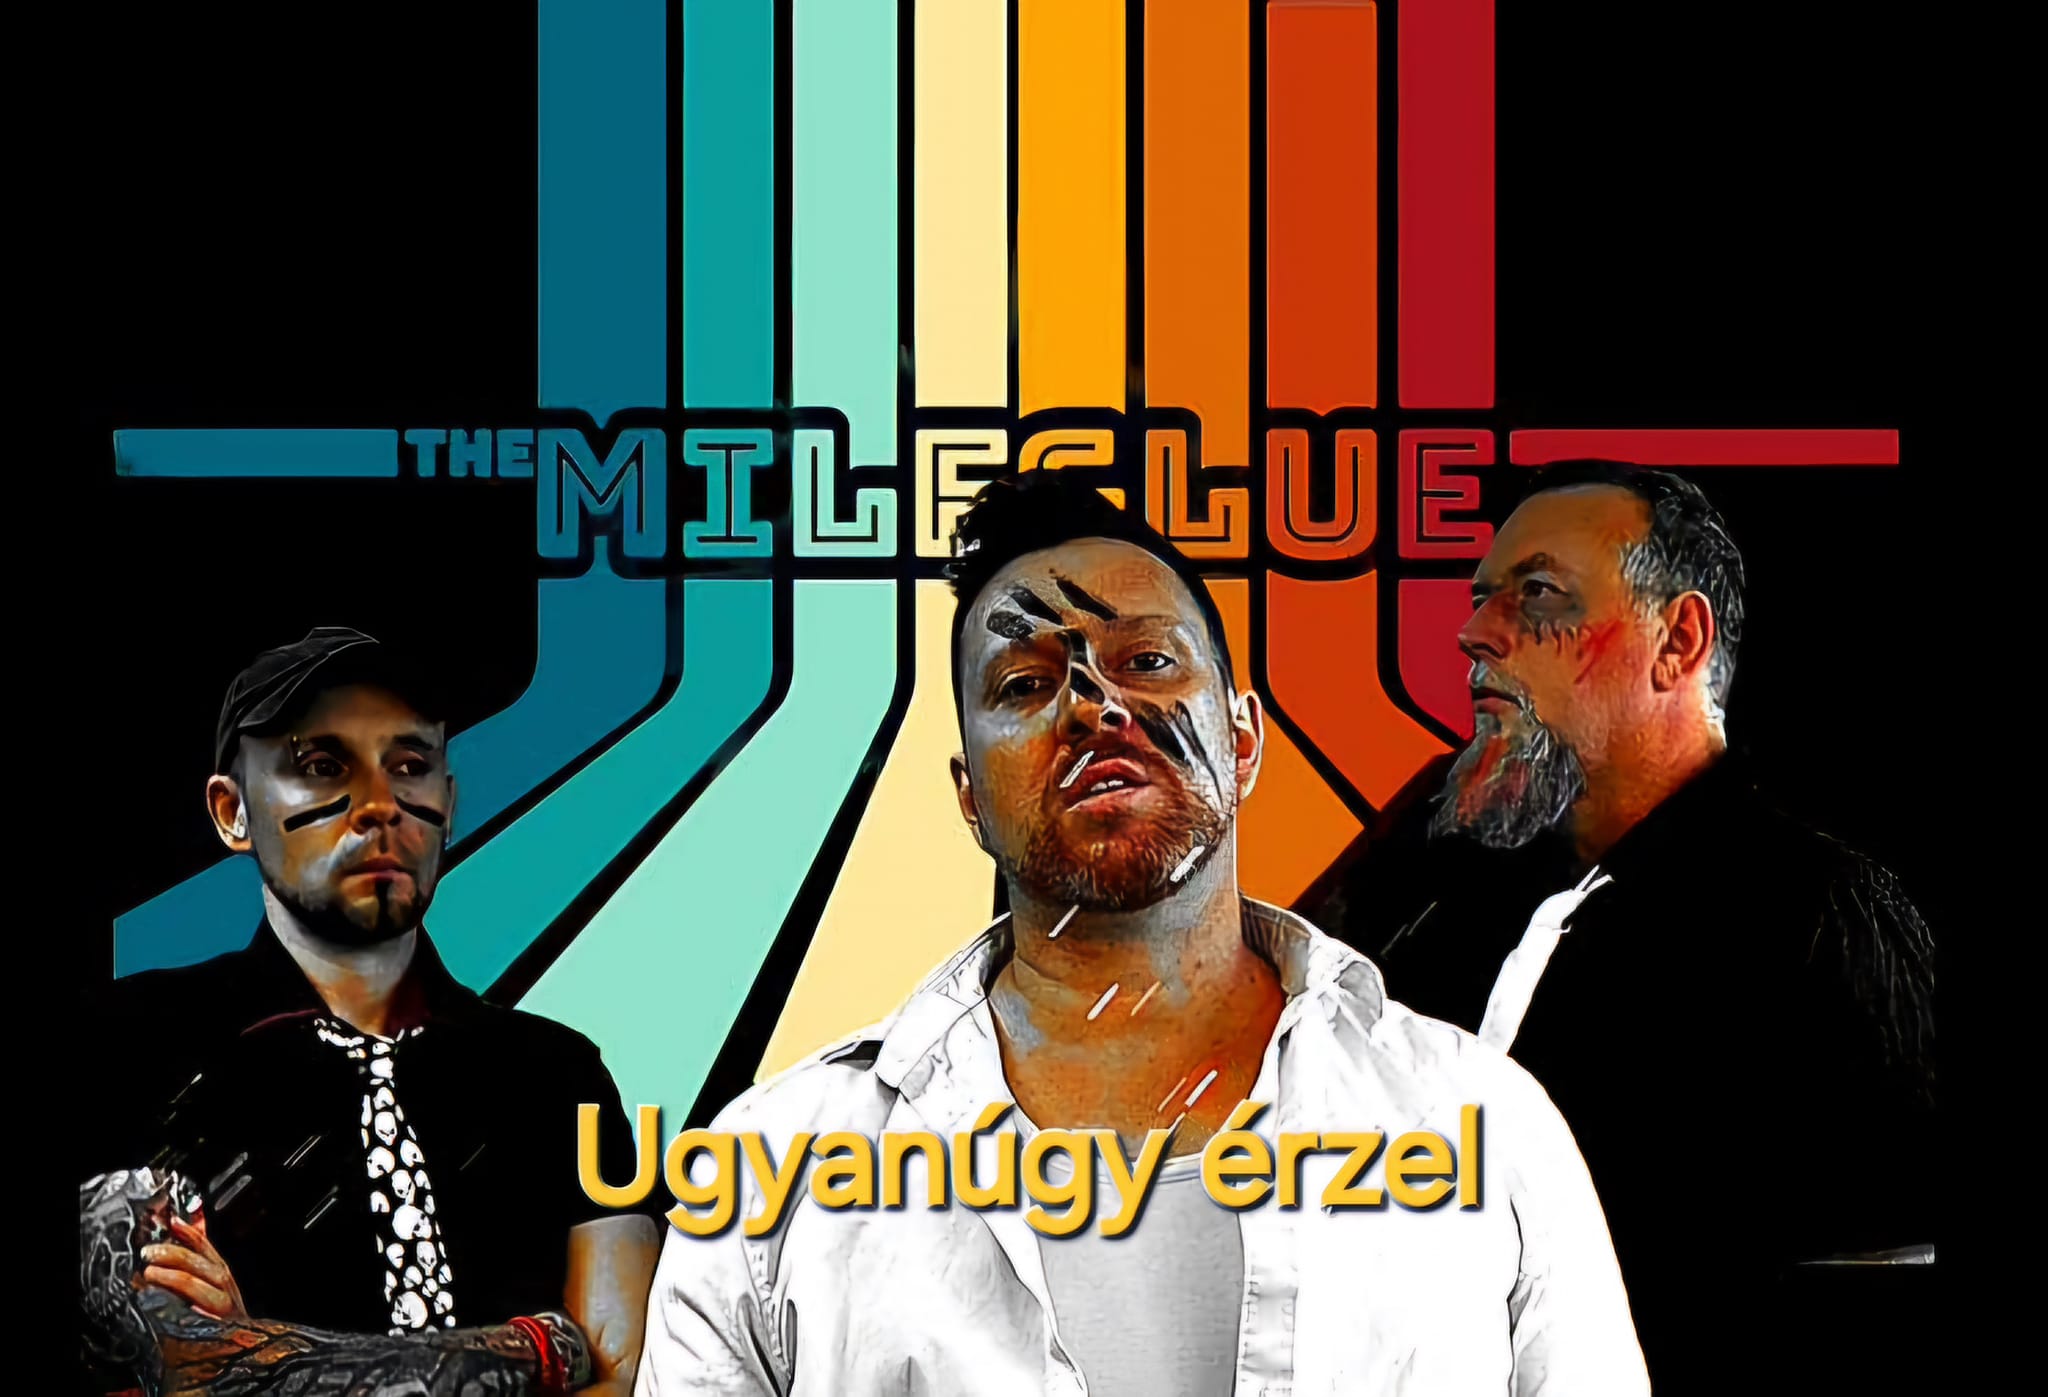 The MilfGlue! - Egy komolyabb hangvételű klipesített dallal jelentkezett a szolnoki dirty punk rock zenekar: 'Ugyanúgy Érzel'